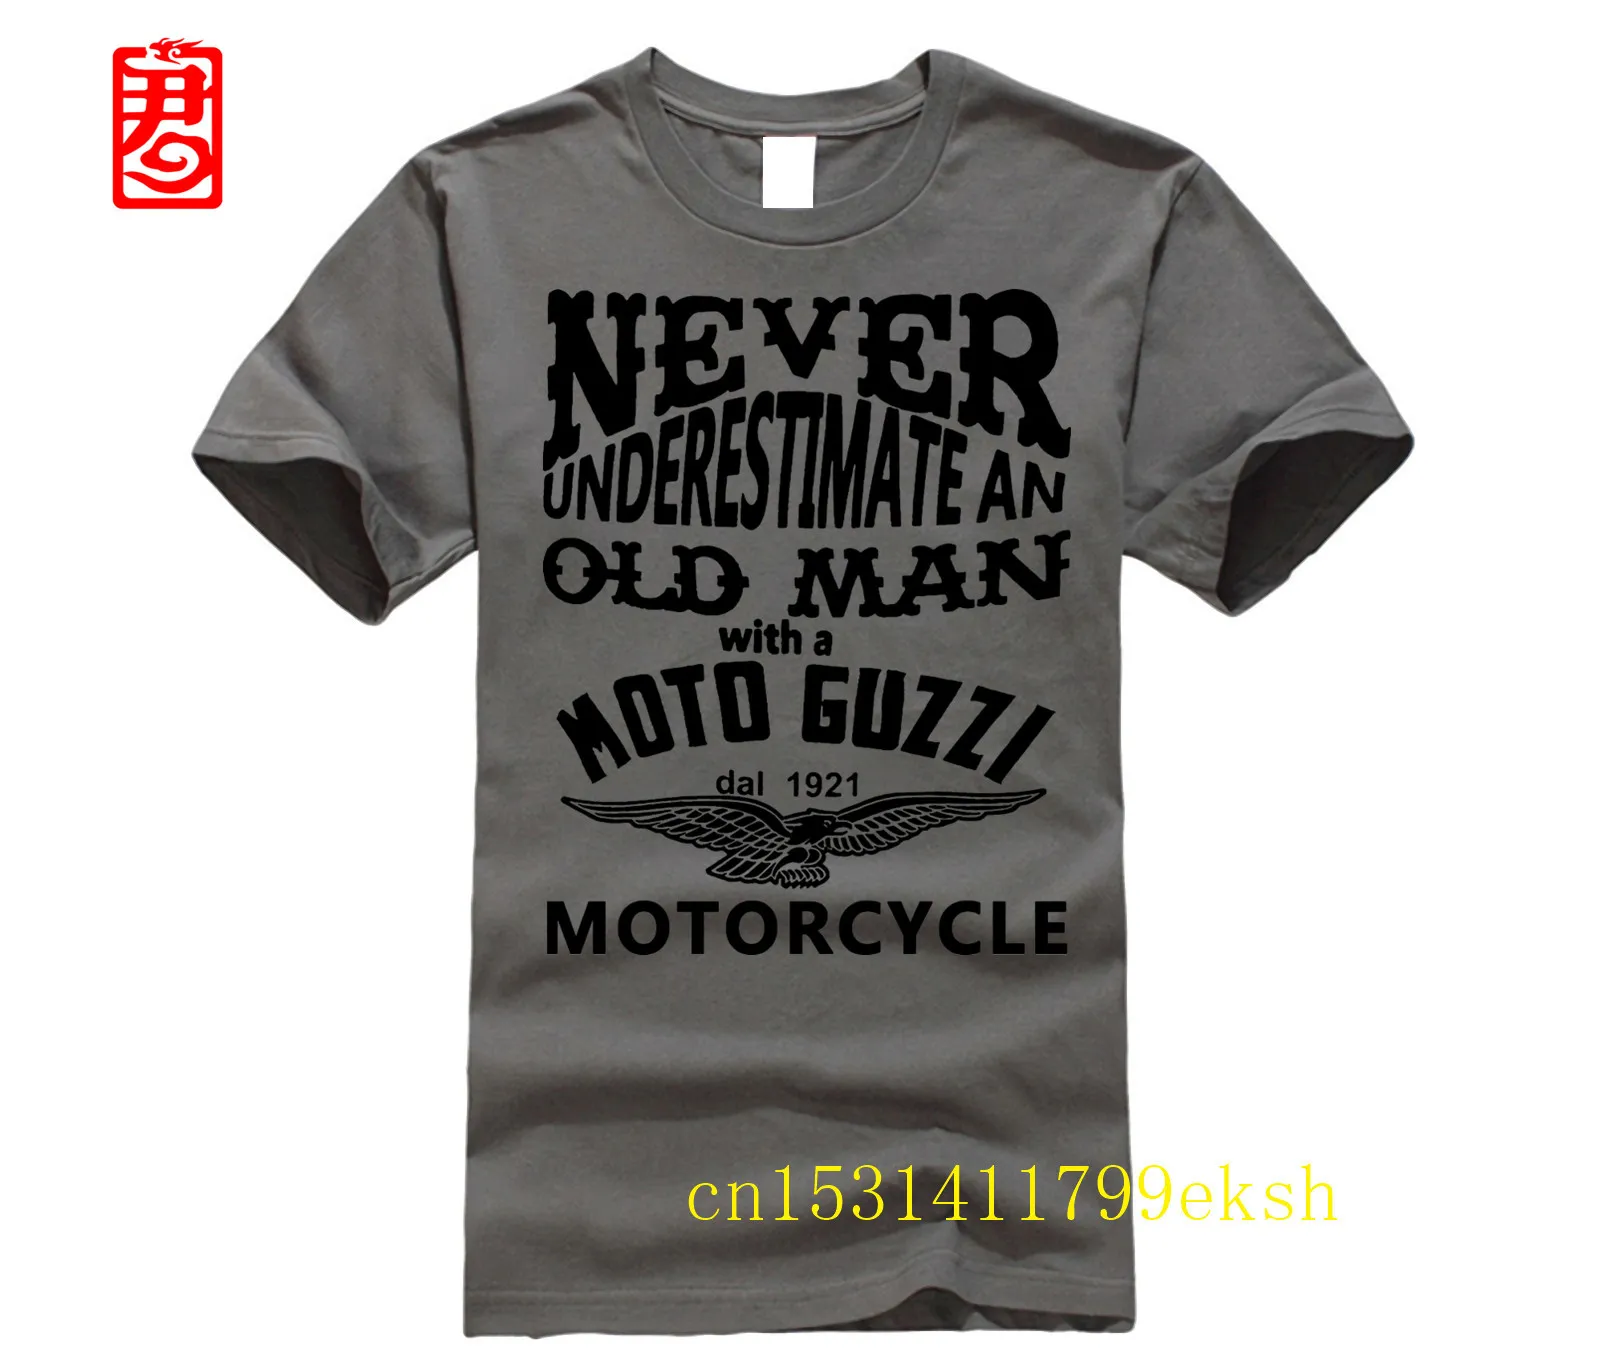 

Байкерская футболка никогда не понижающая старые мотоциклы Guzzi Rider, размеры S-5XL